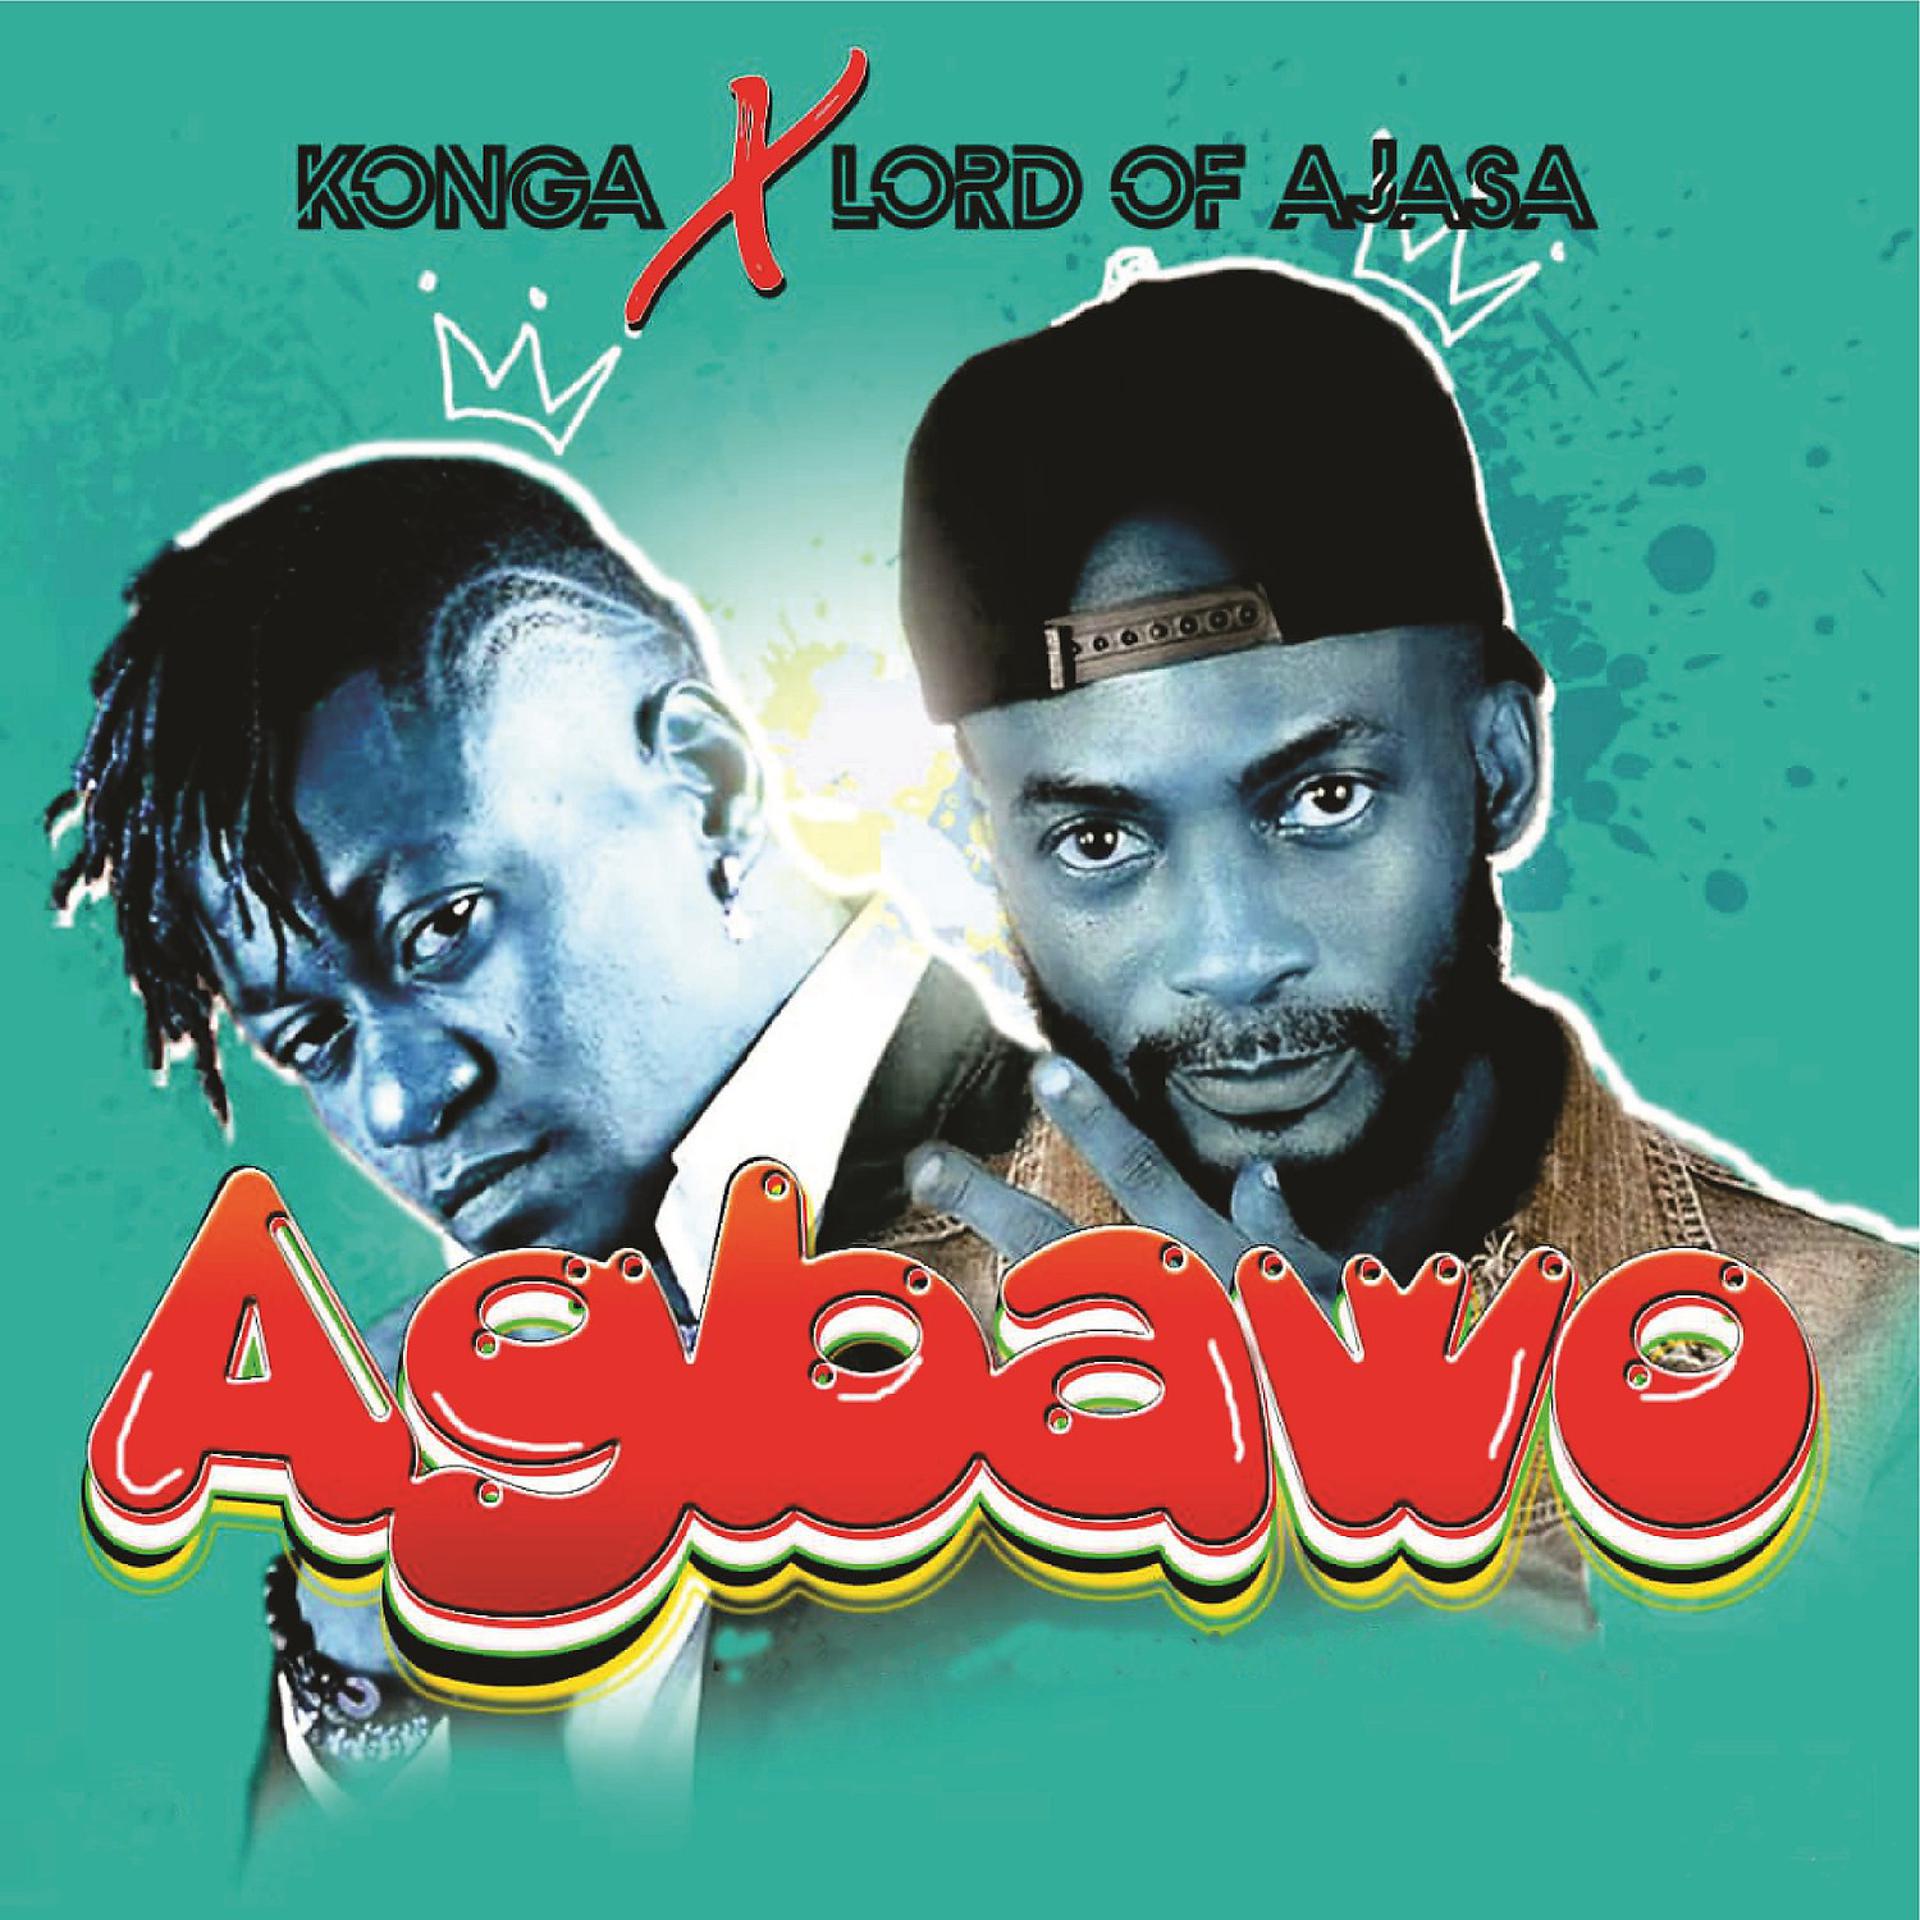 Постер альбома Agbawo